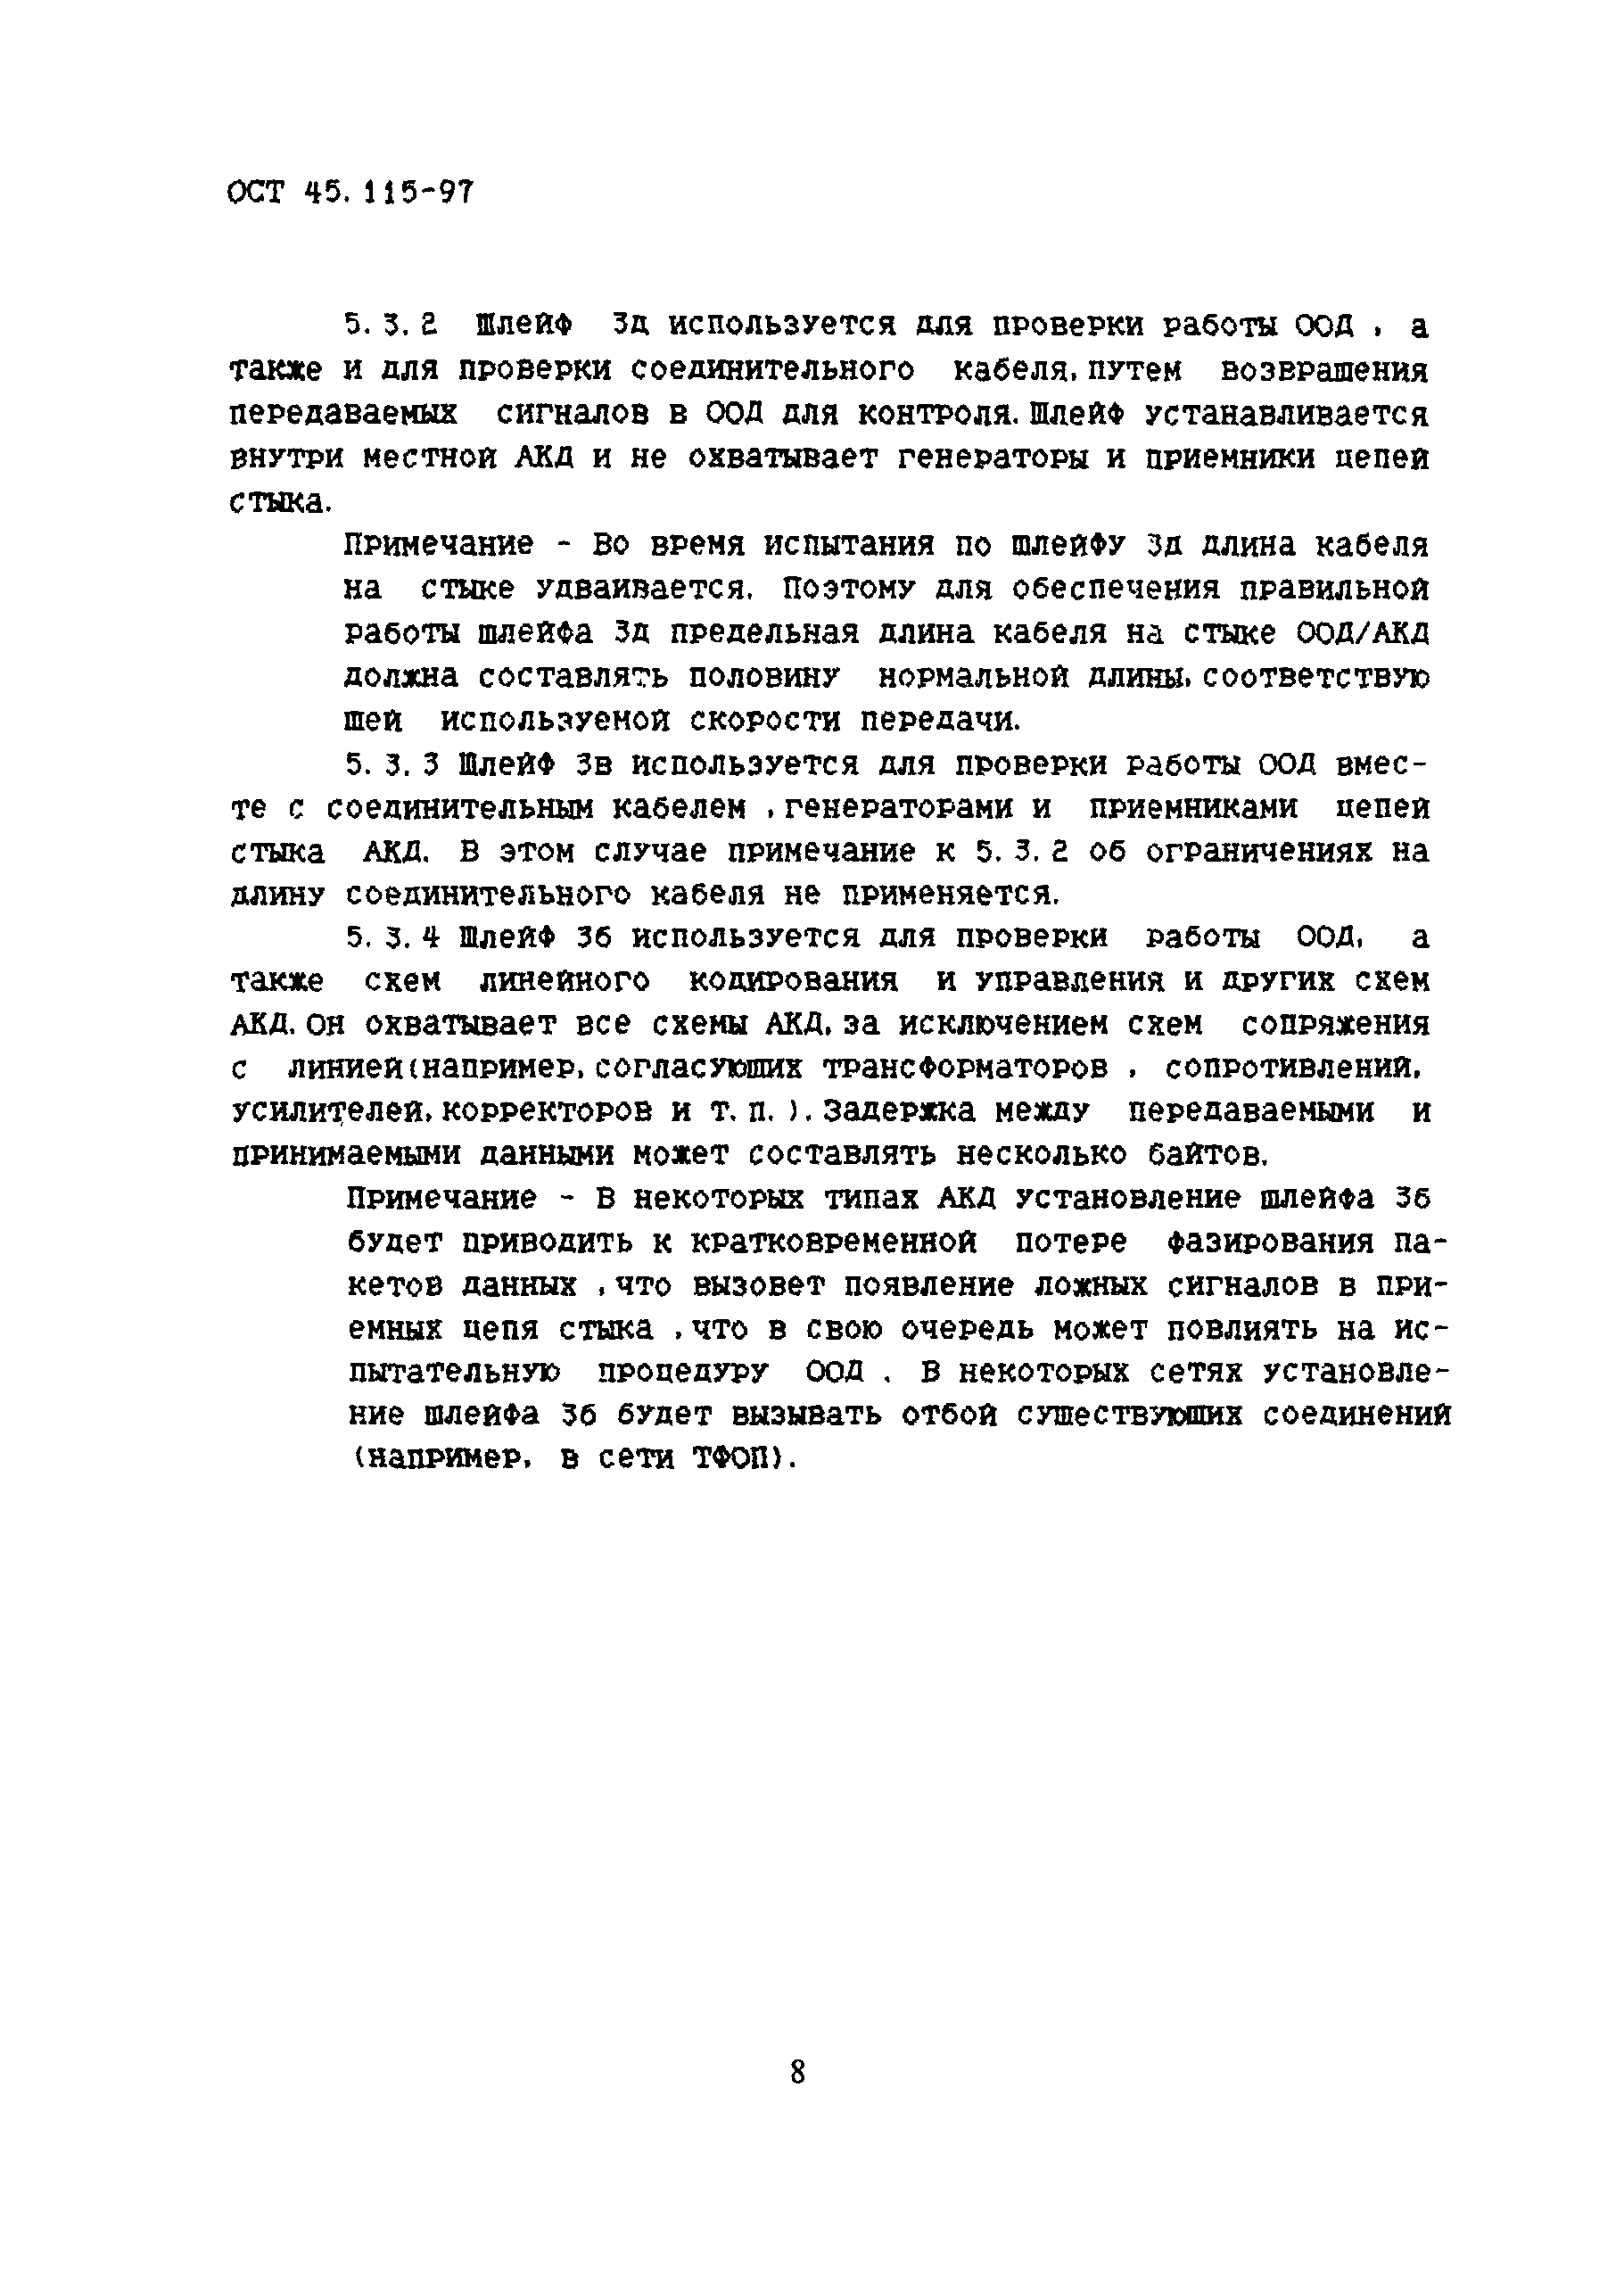 ОСТ 45.115-97